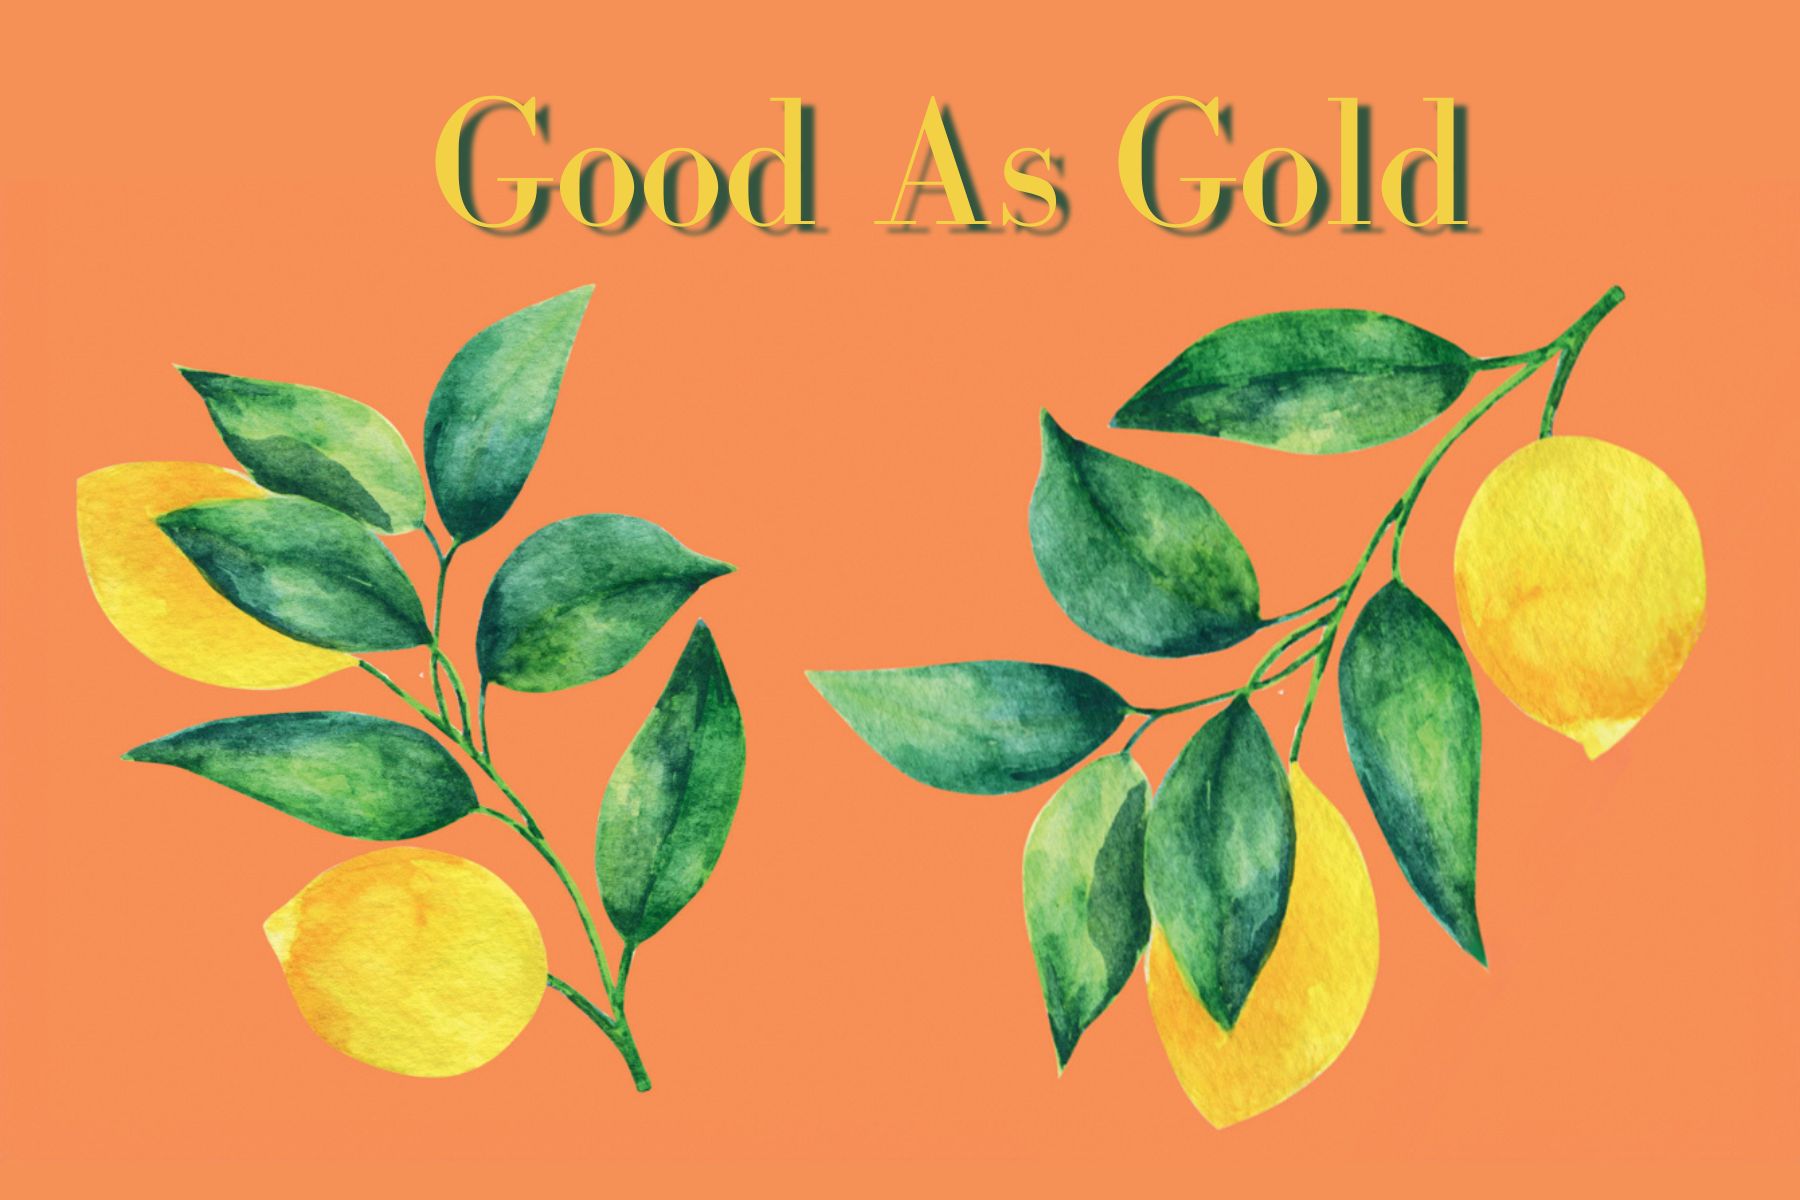 Good as Gold, illustration of lemons